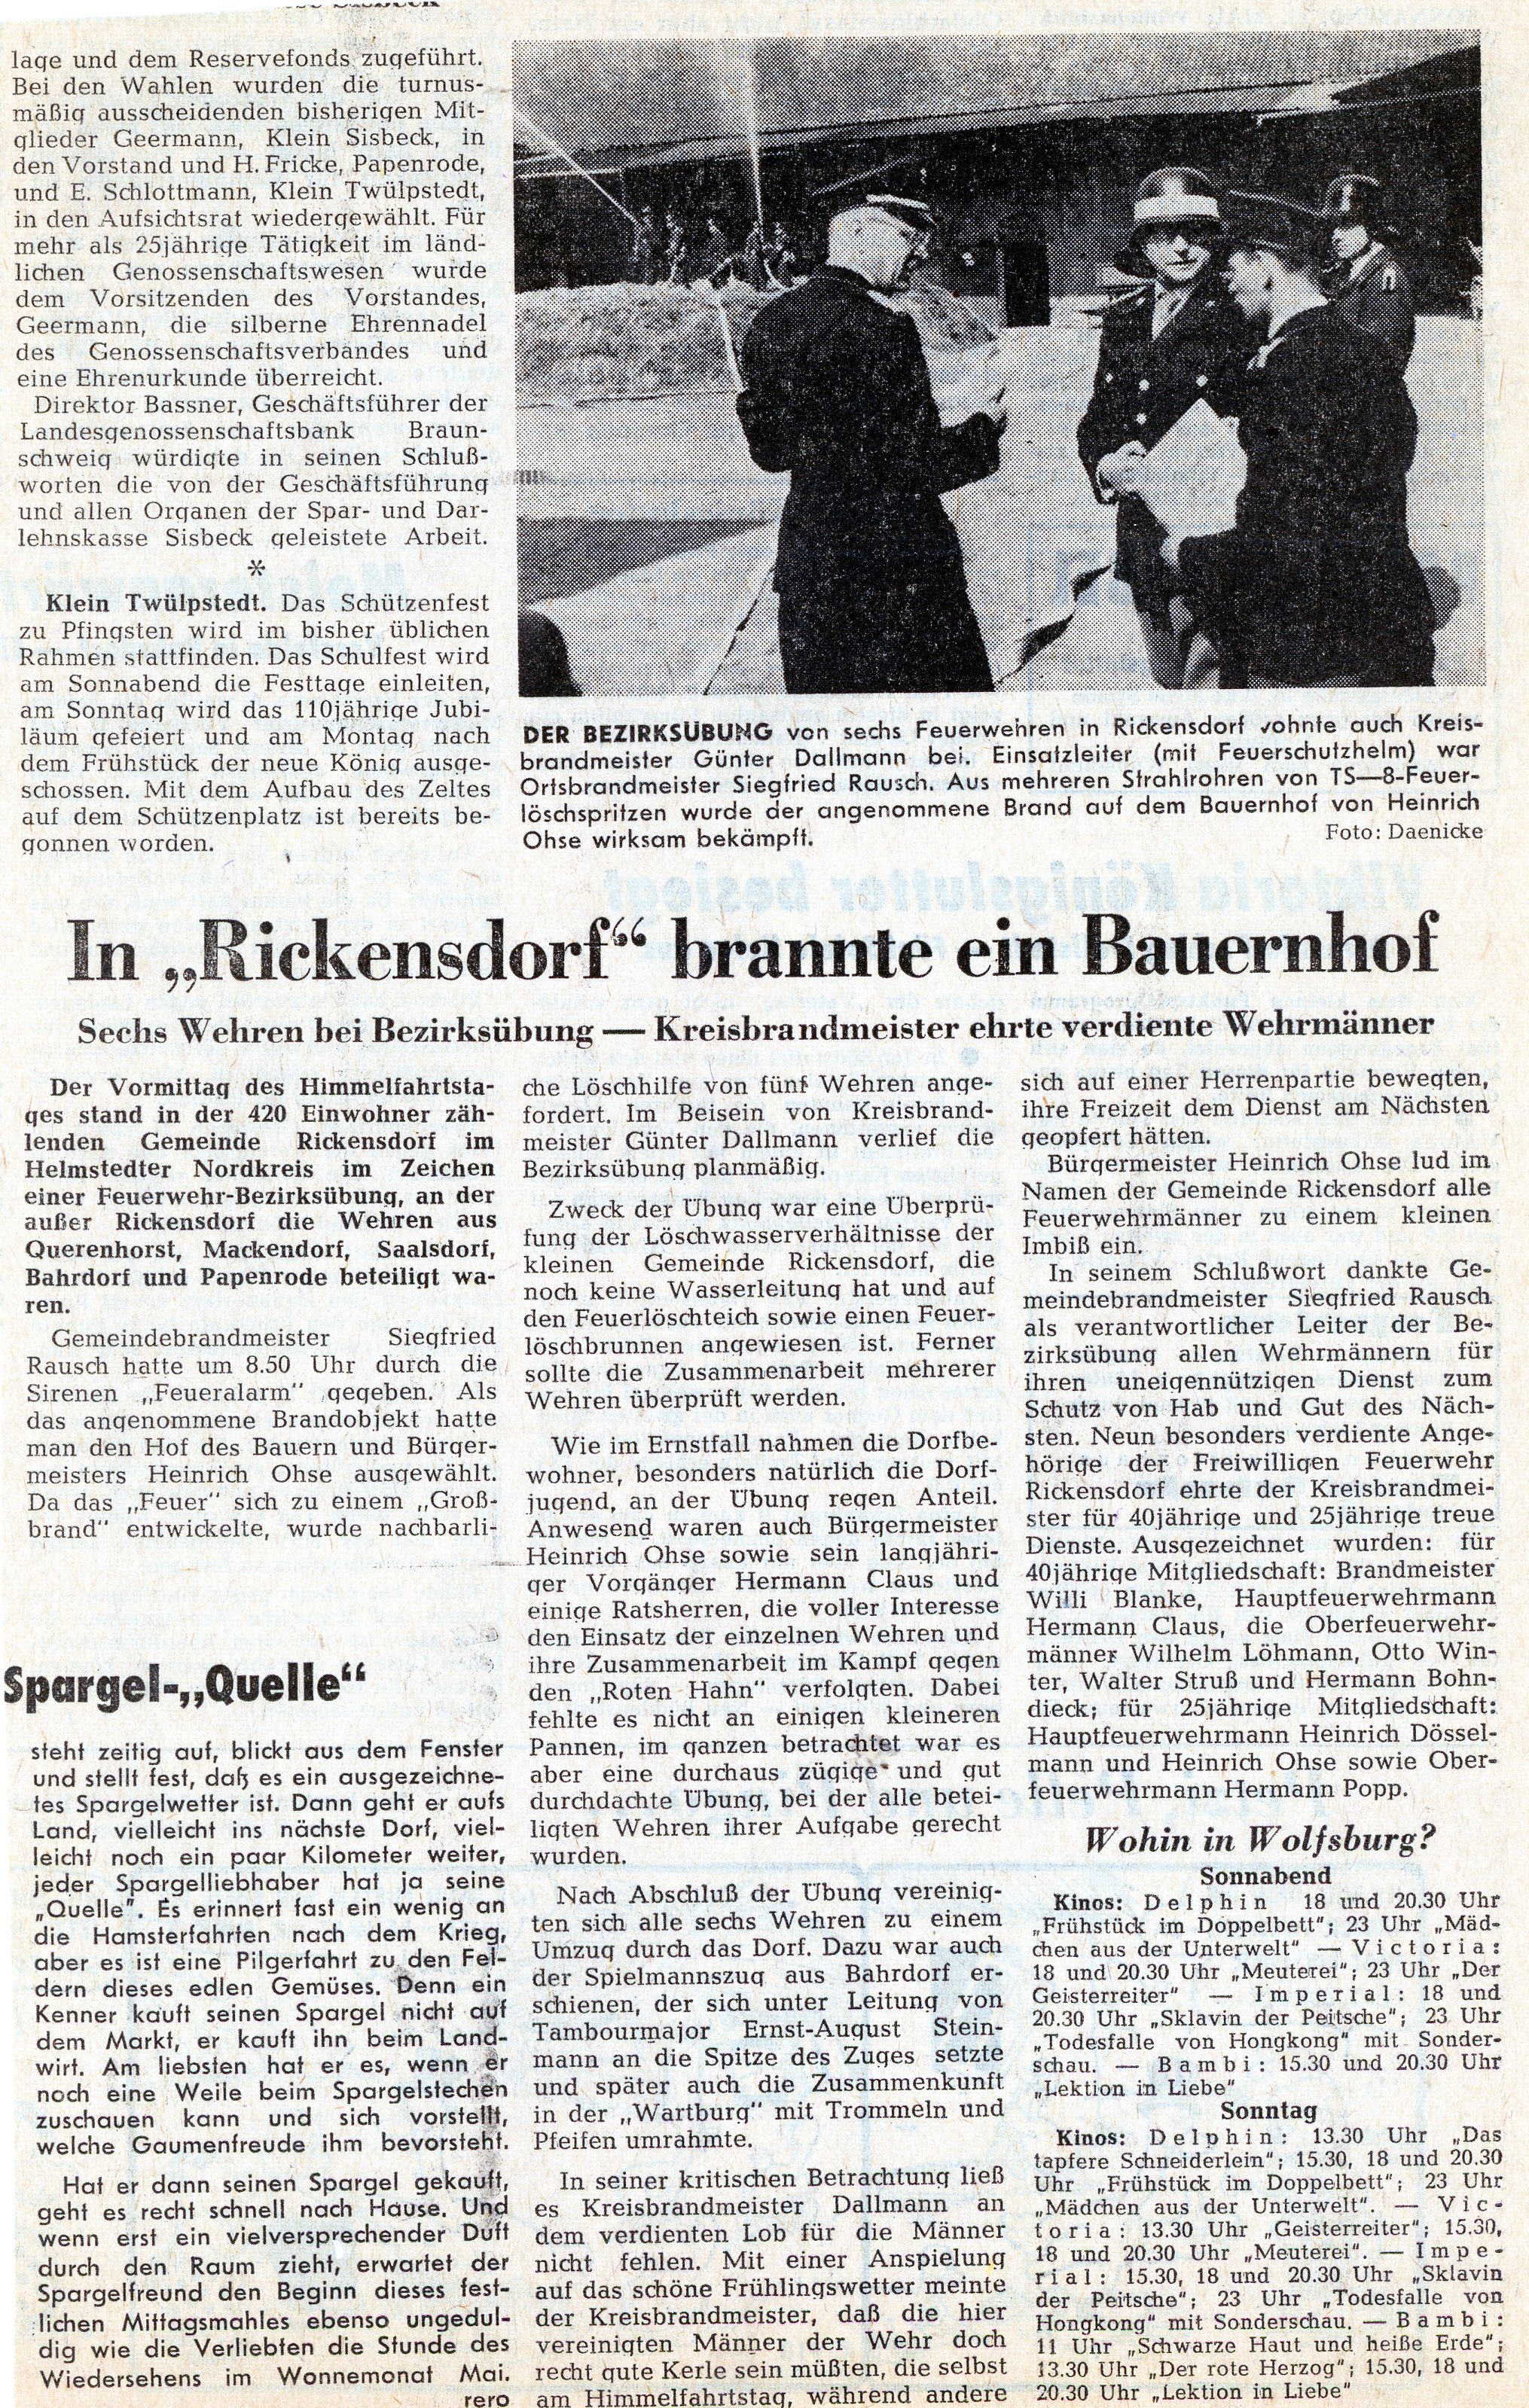 1963 05 25 26 Bezirksubung001